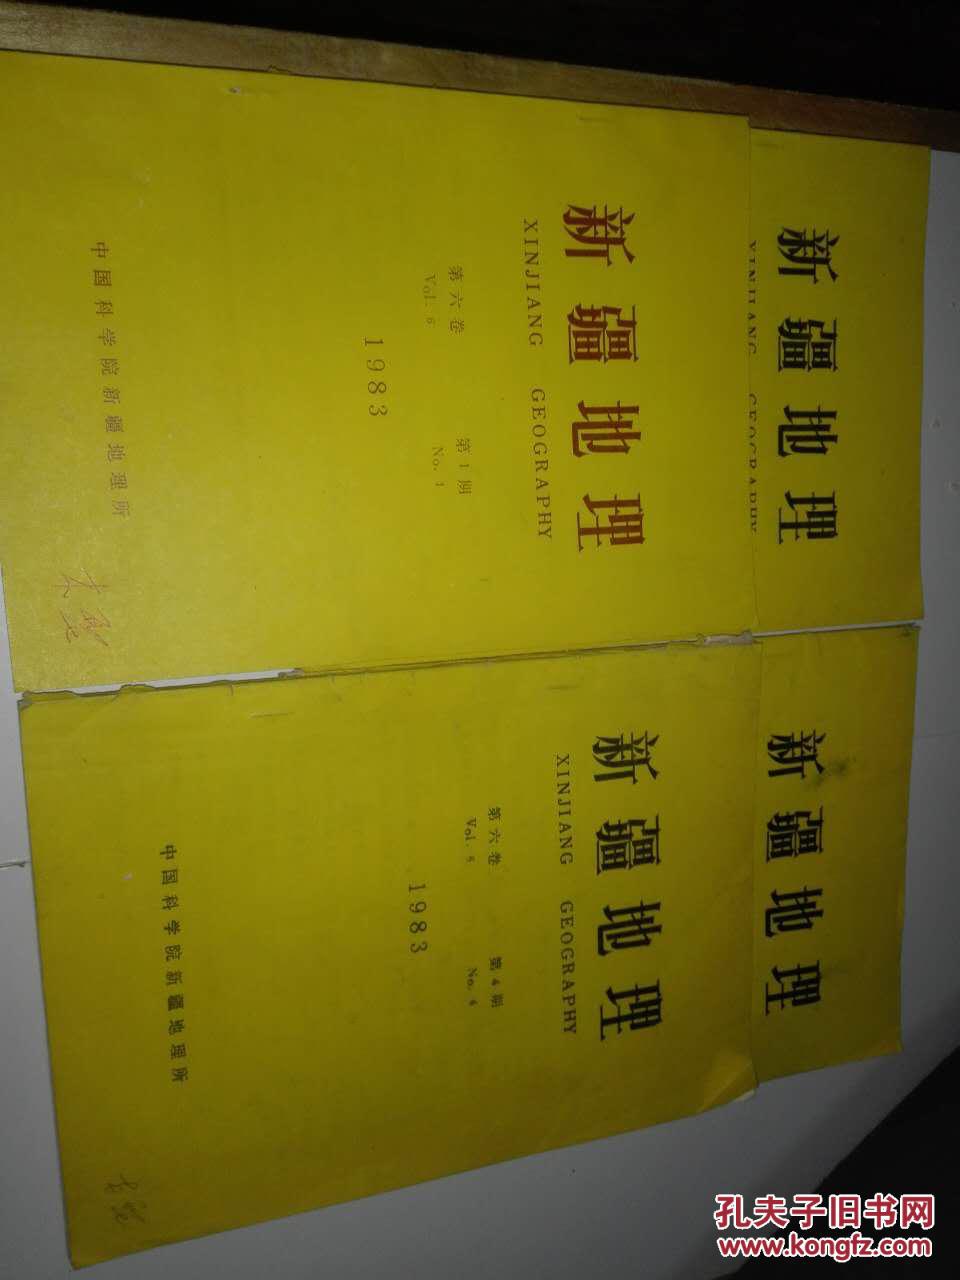 新疆地理、1983年第六卷第一期--第四期、四本合售